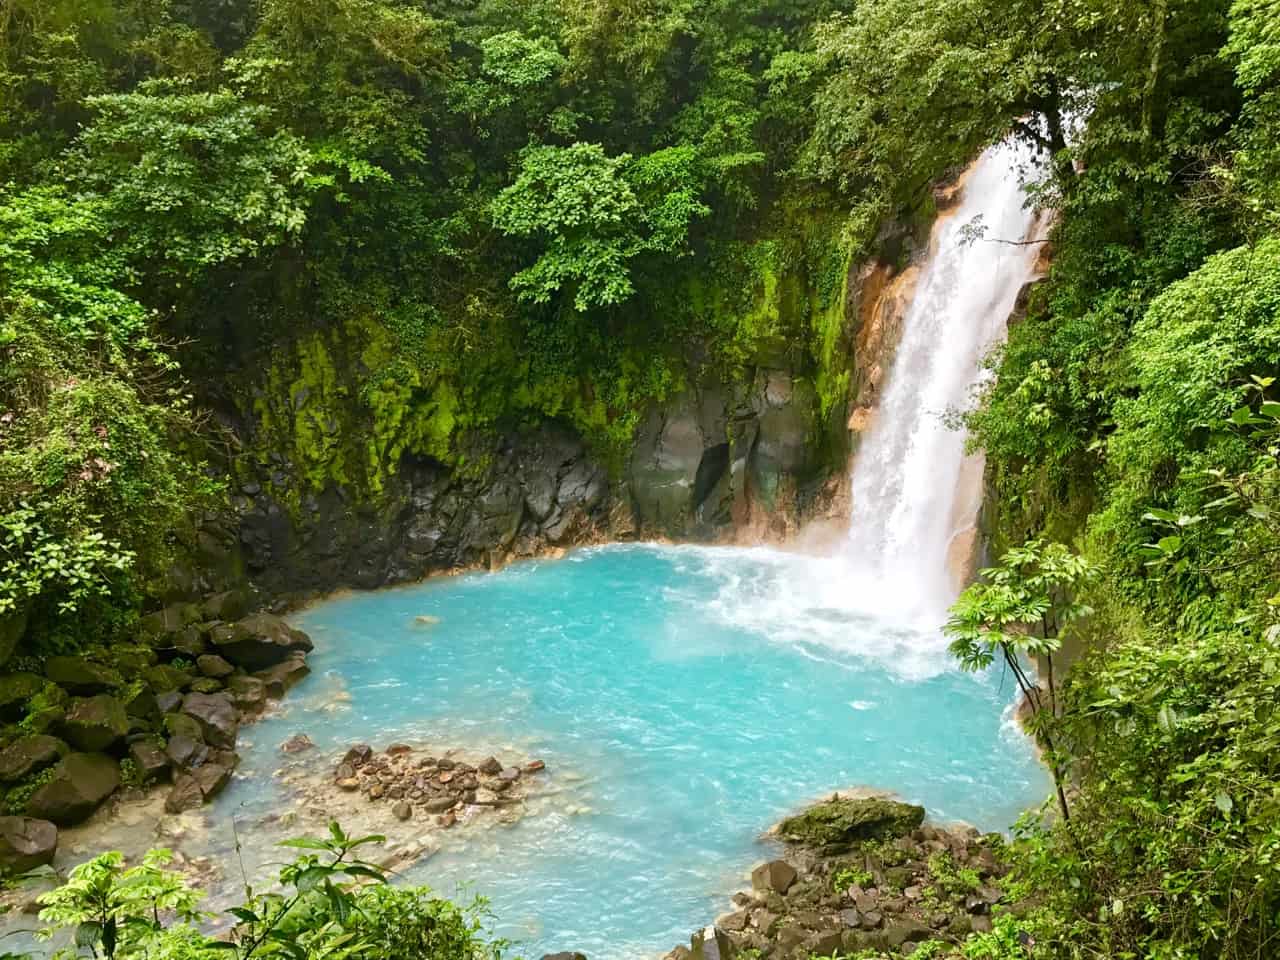  a cascata Rio Celeste mergulha numa piscina azul-Láctea no Parque Nacional do vulcão Tenorio, um dos parques menos visitados da Costa Rica.